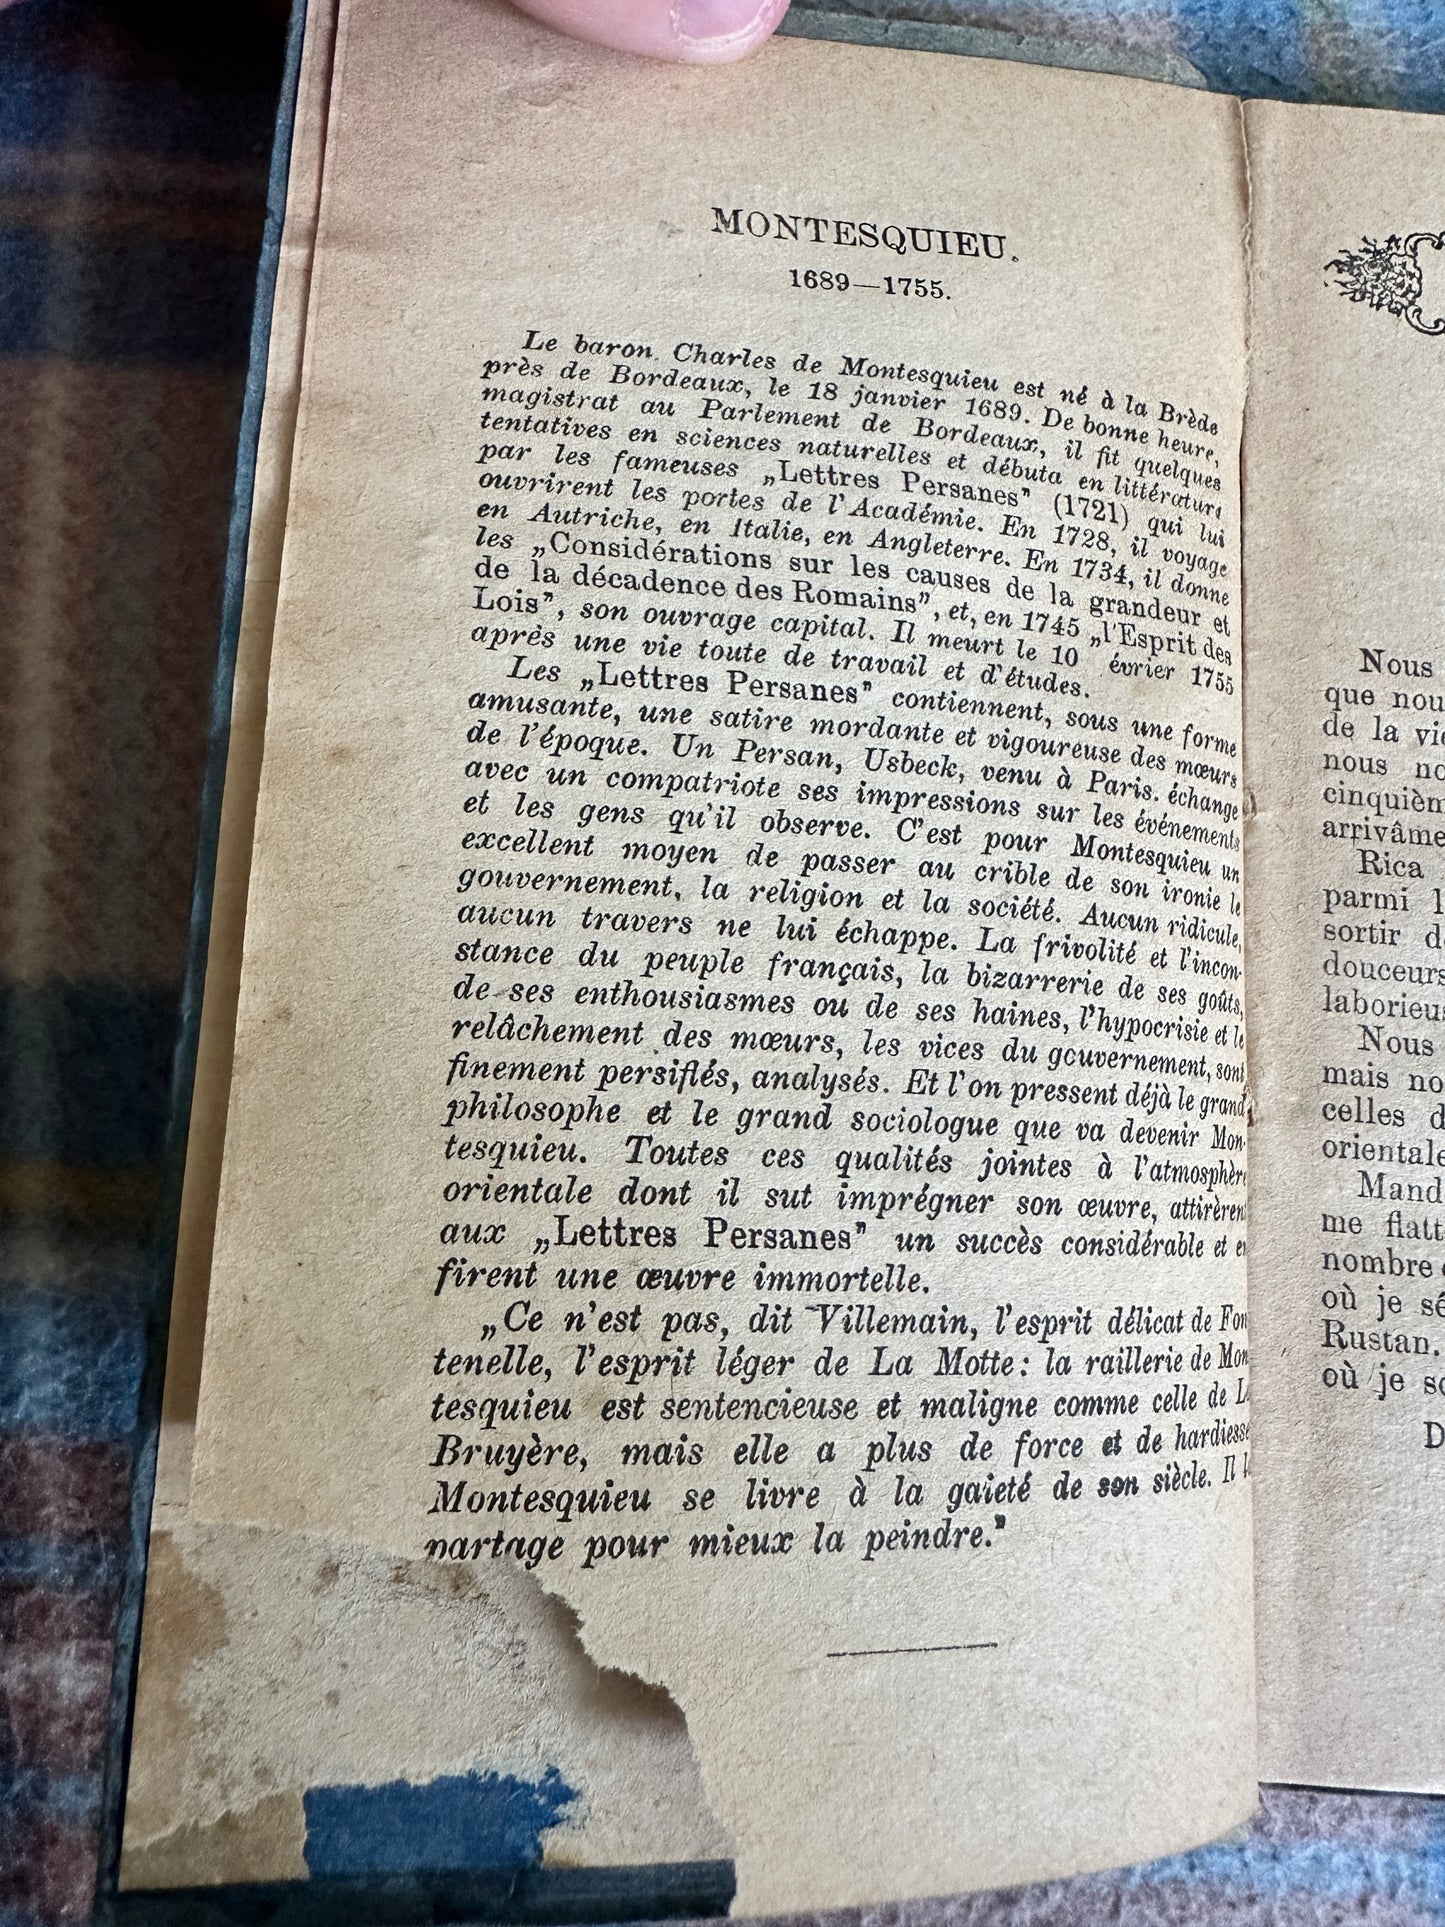 1930’s Lettres Persanes(Persian Letters) Montesquieu(Éditions Nilsson)